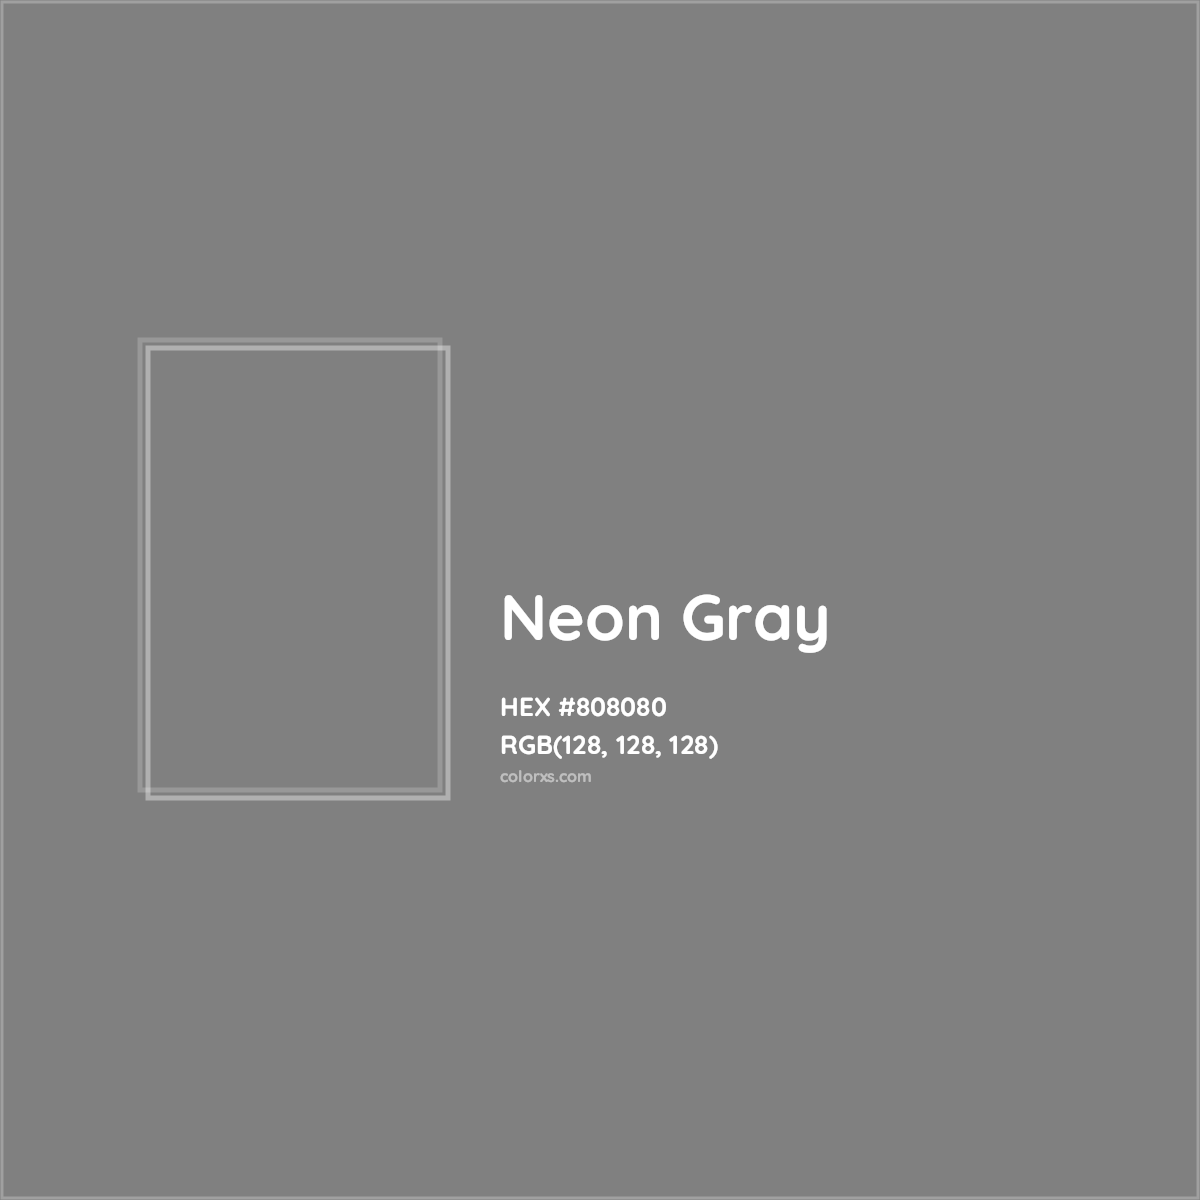 HEX #808080 Neon Gray - Color Code